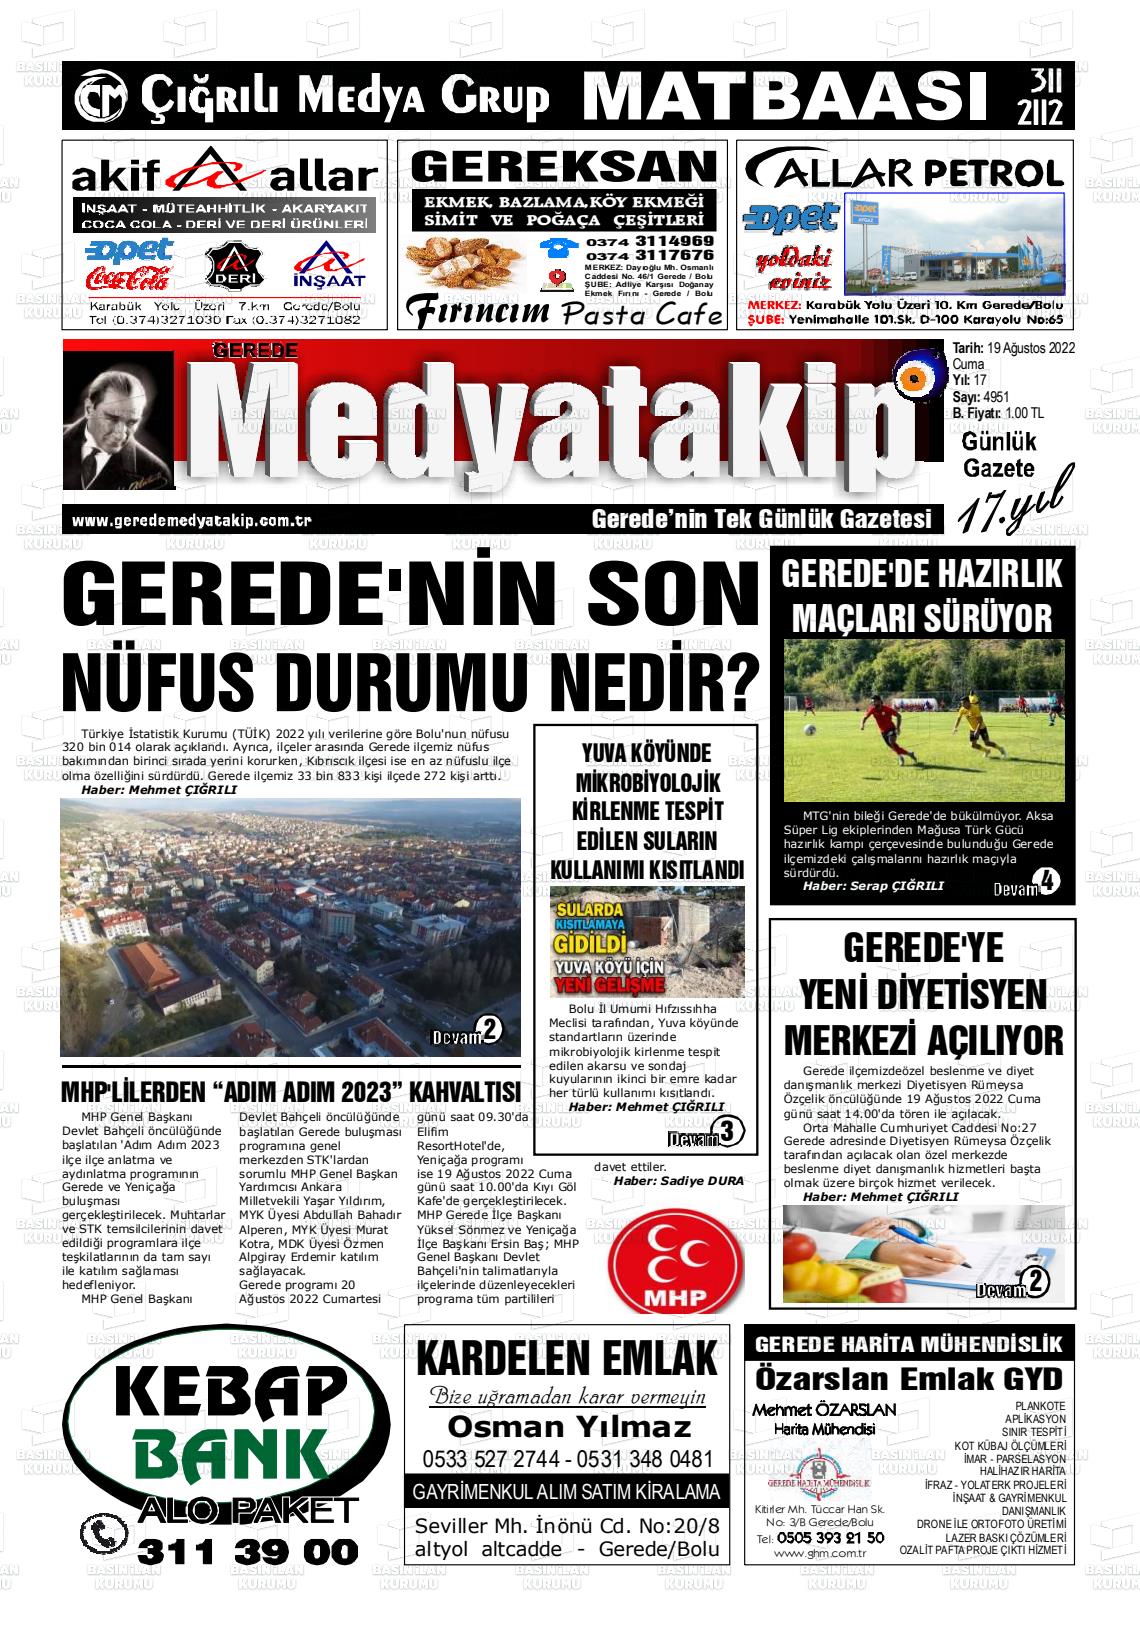 19 Ağustos 2022 Gerede Medya Takip Gazete Manşeti